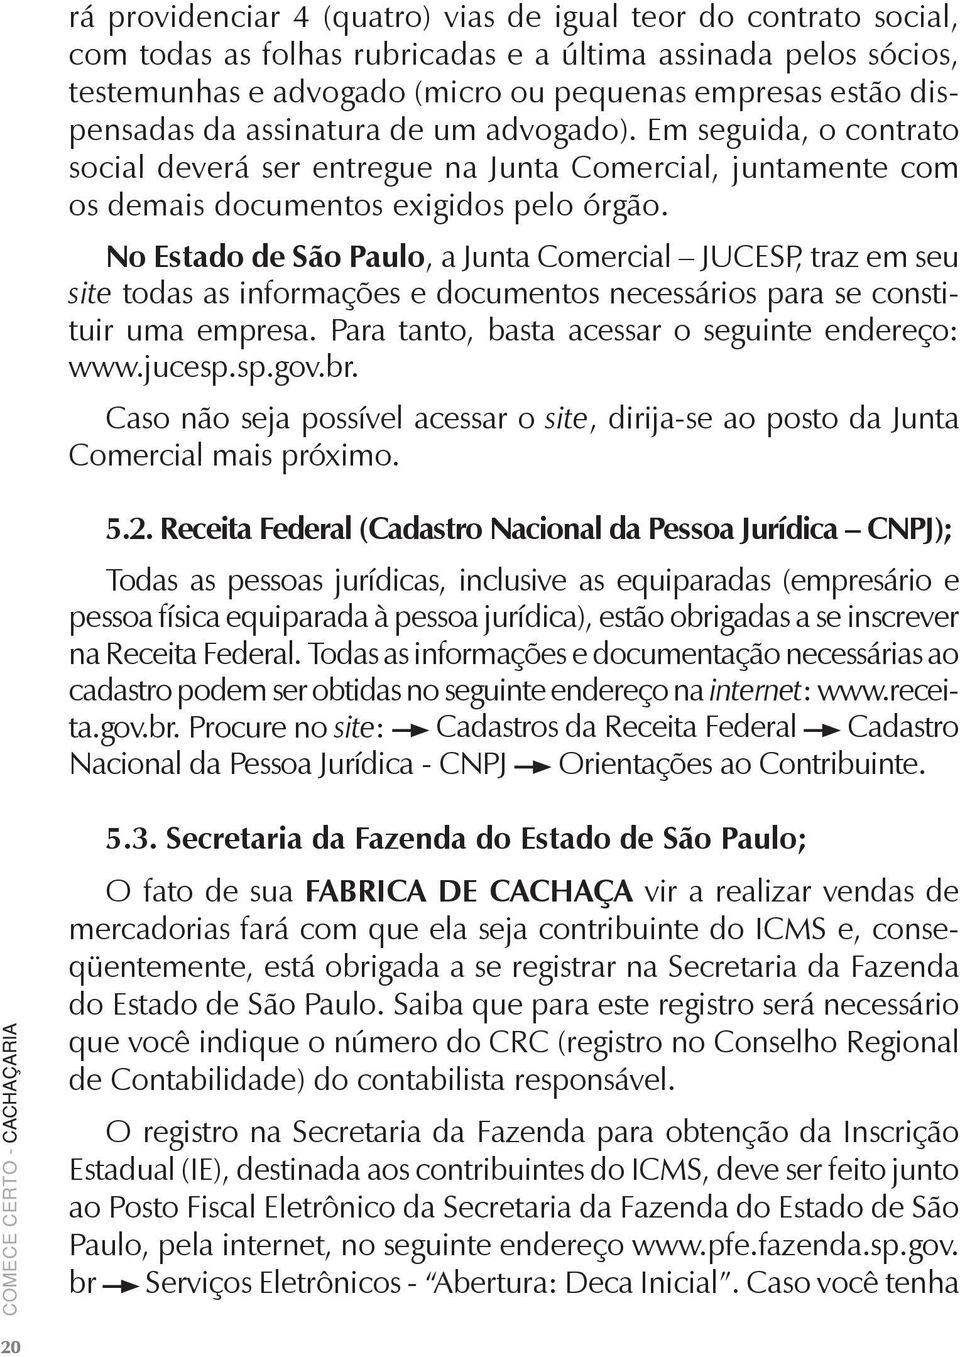 No Estado de São Paulo, a Junta Comercial JUCESP, traz em seu site todas as informações e documentos necessários para se constituir uma empresa. Para tanto, basta acessar o seguinte endereço: www.